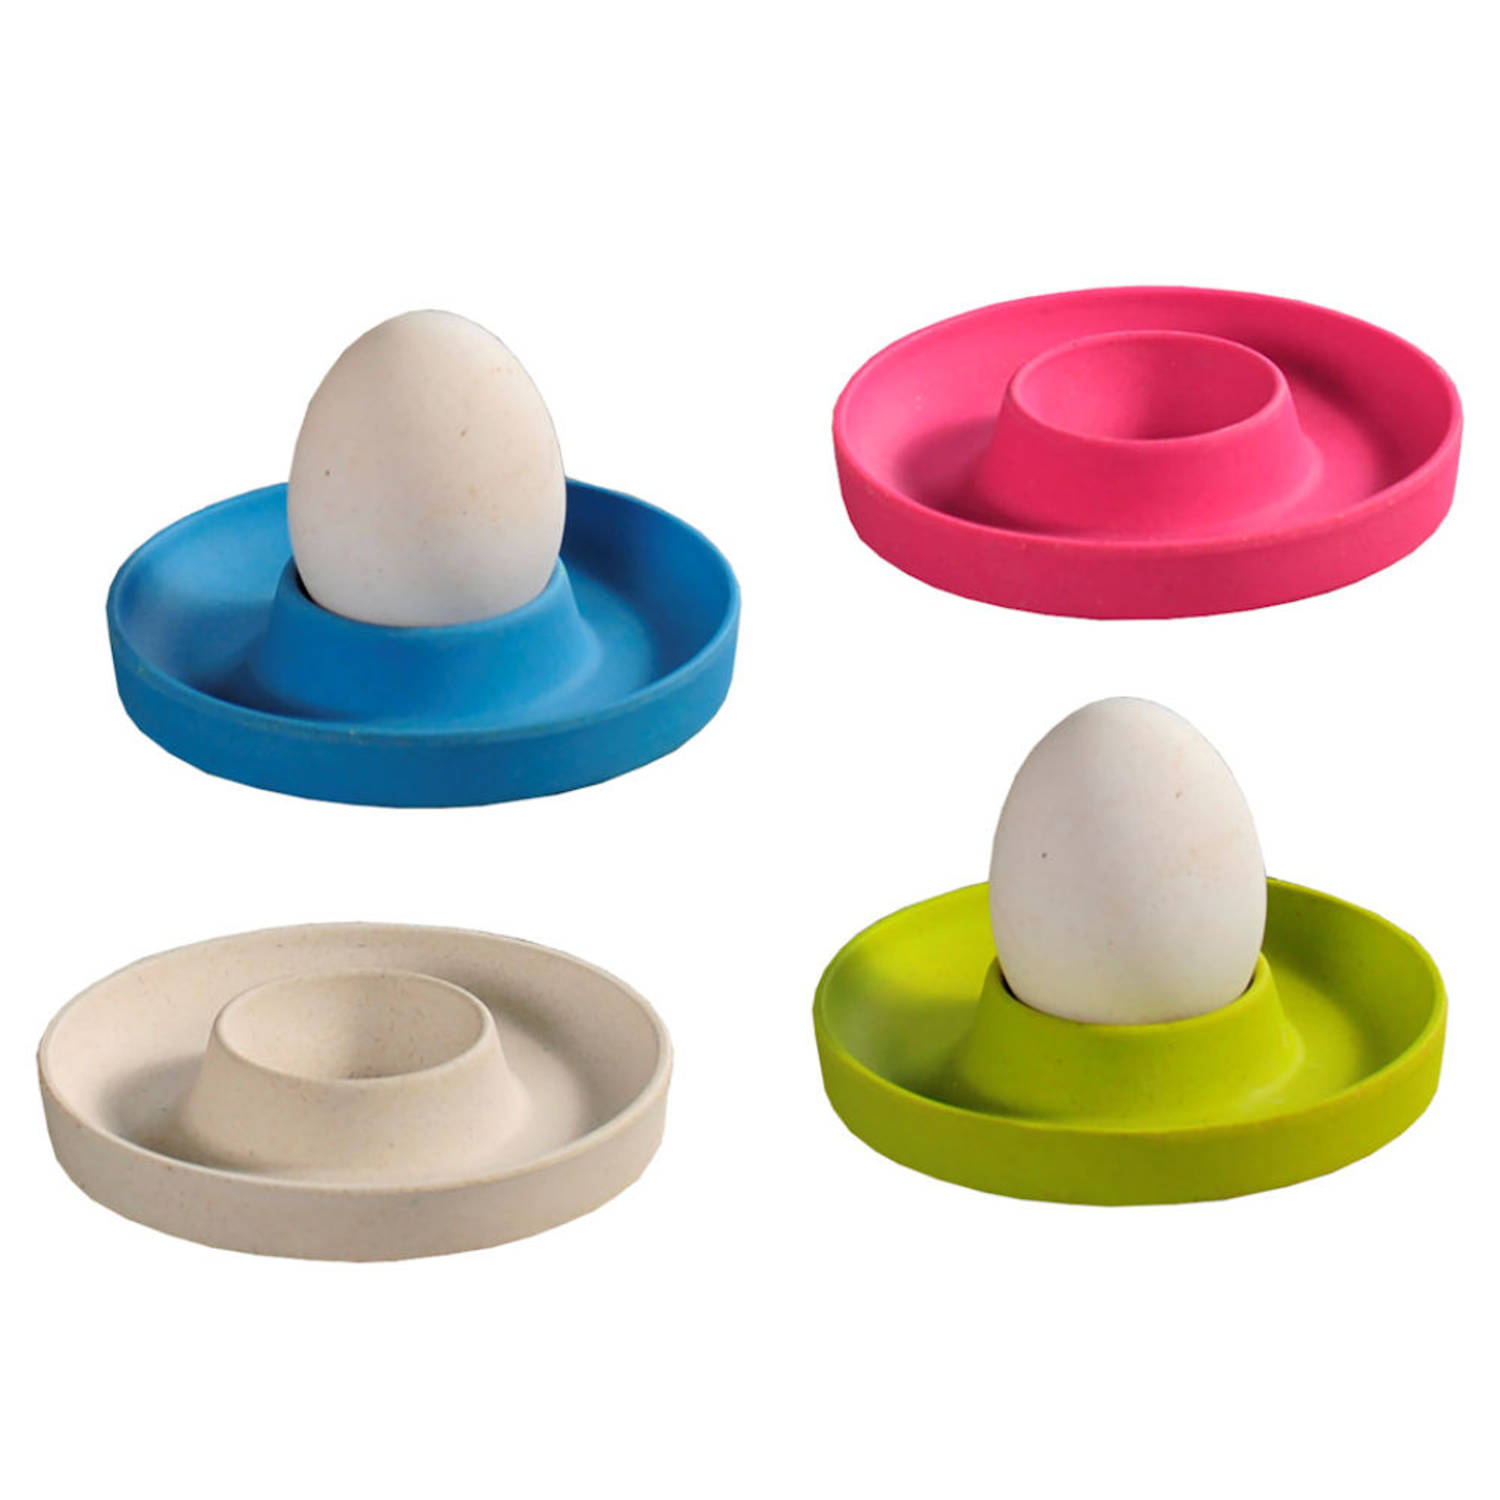 Eierdopjes set van 4 Stuks - Met praktische rand voor neerleggen van de eierschaal - Eierdoppen Set 4-Delig - Egg cups - Melamine plastic - MIX KLEUREN